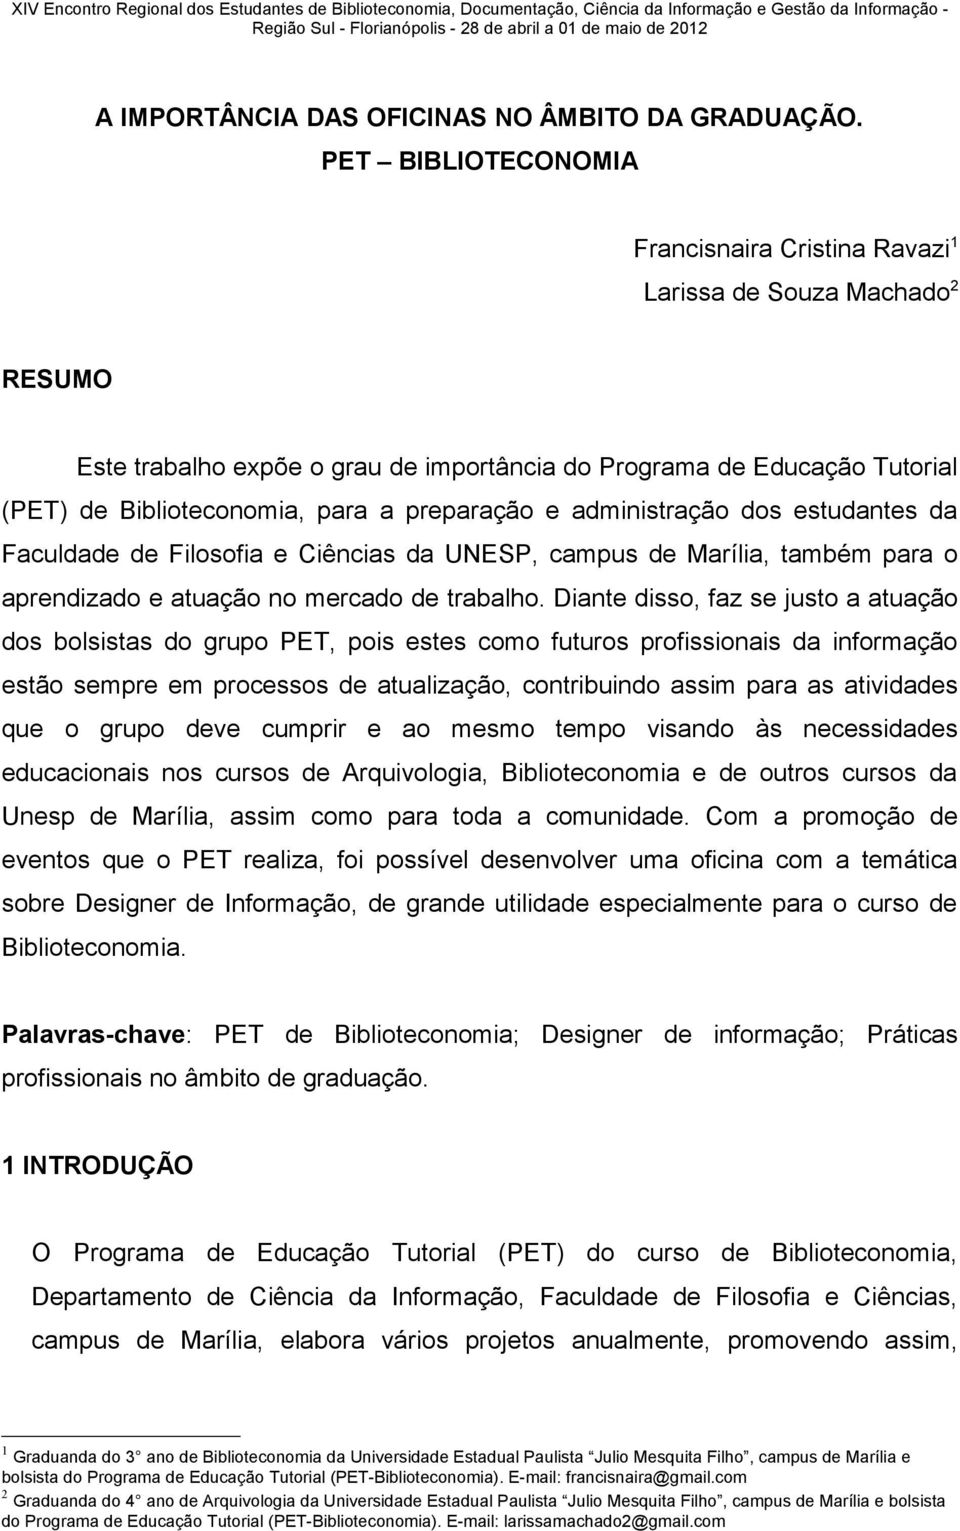 PET BIBLIOTECONOMIA Francisnaira Cristina Ravazi 1 Larissa de Souza Machado 2 RESUMO Este trabalho expõe o grau de importância do Programa de Educação Tutorial (PET) de Biblioteconomia, para a